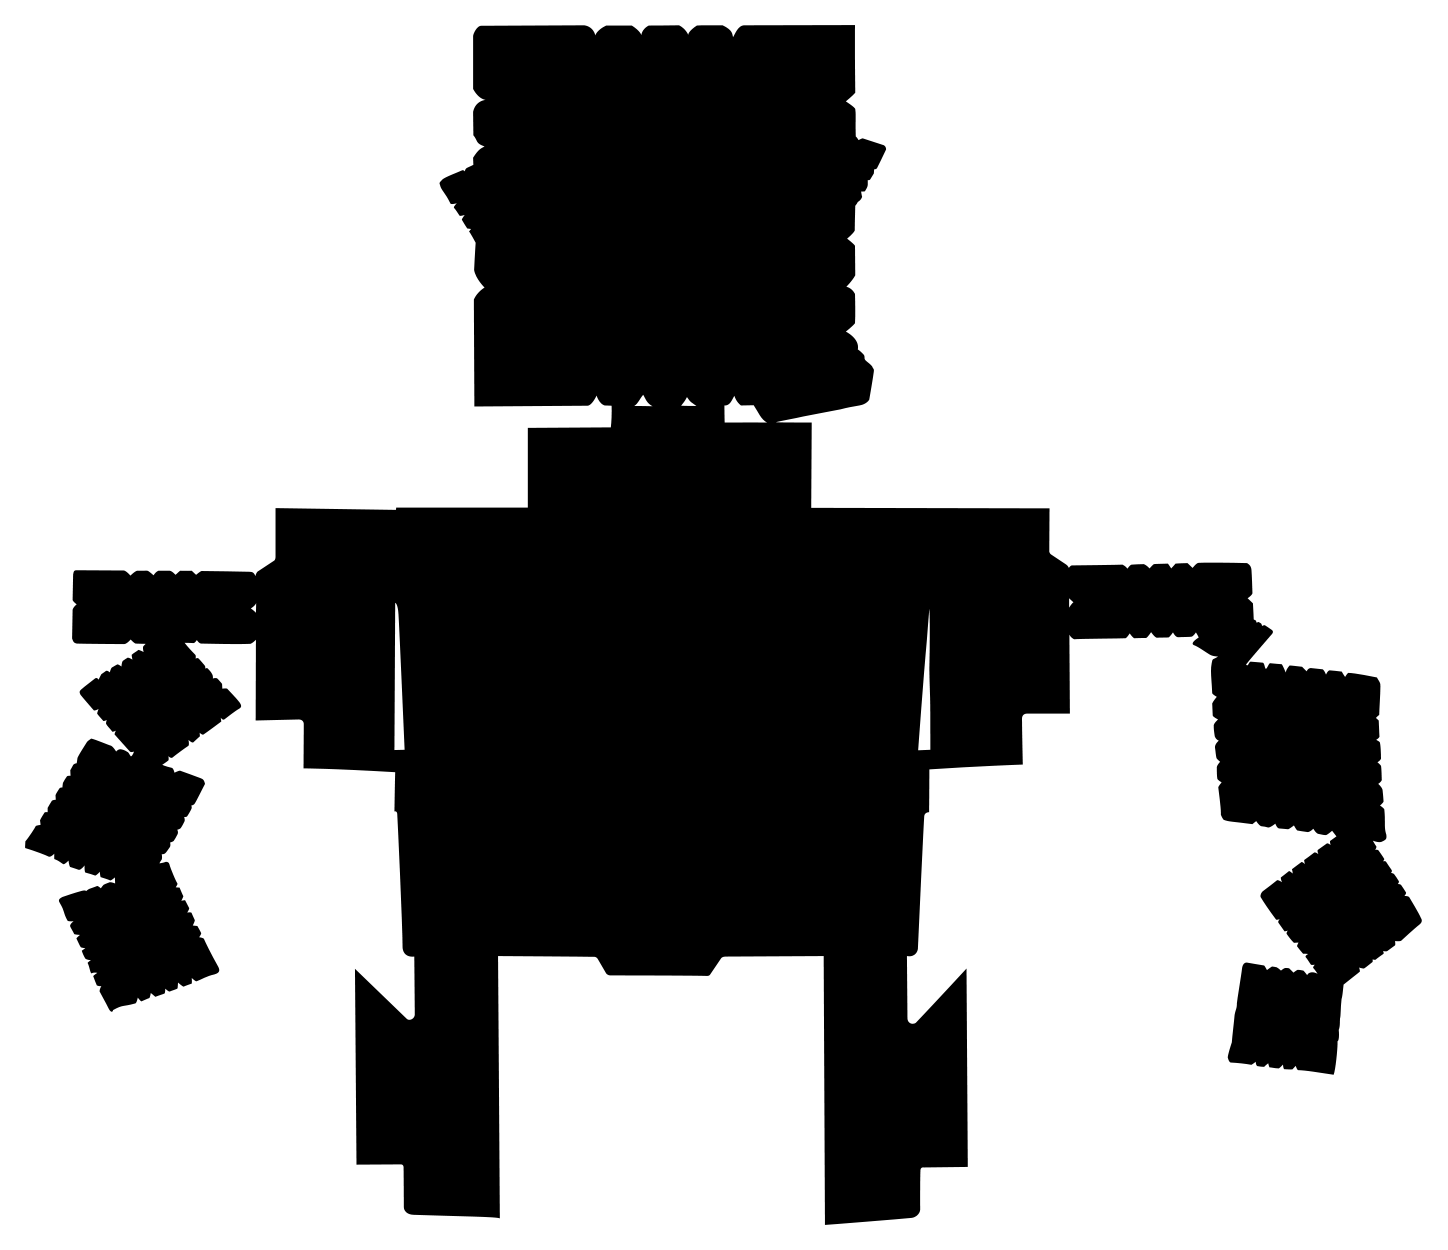 Cheez-It Family Size BoxBot silhouette